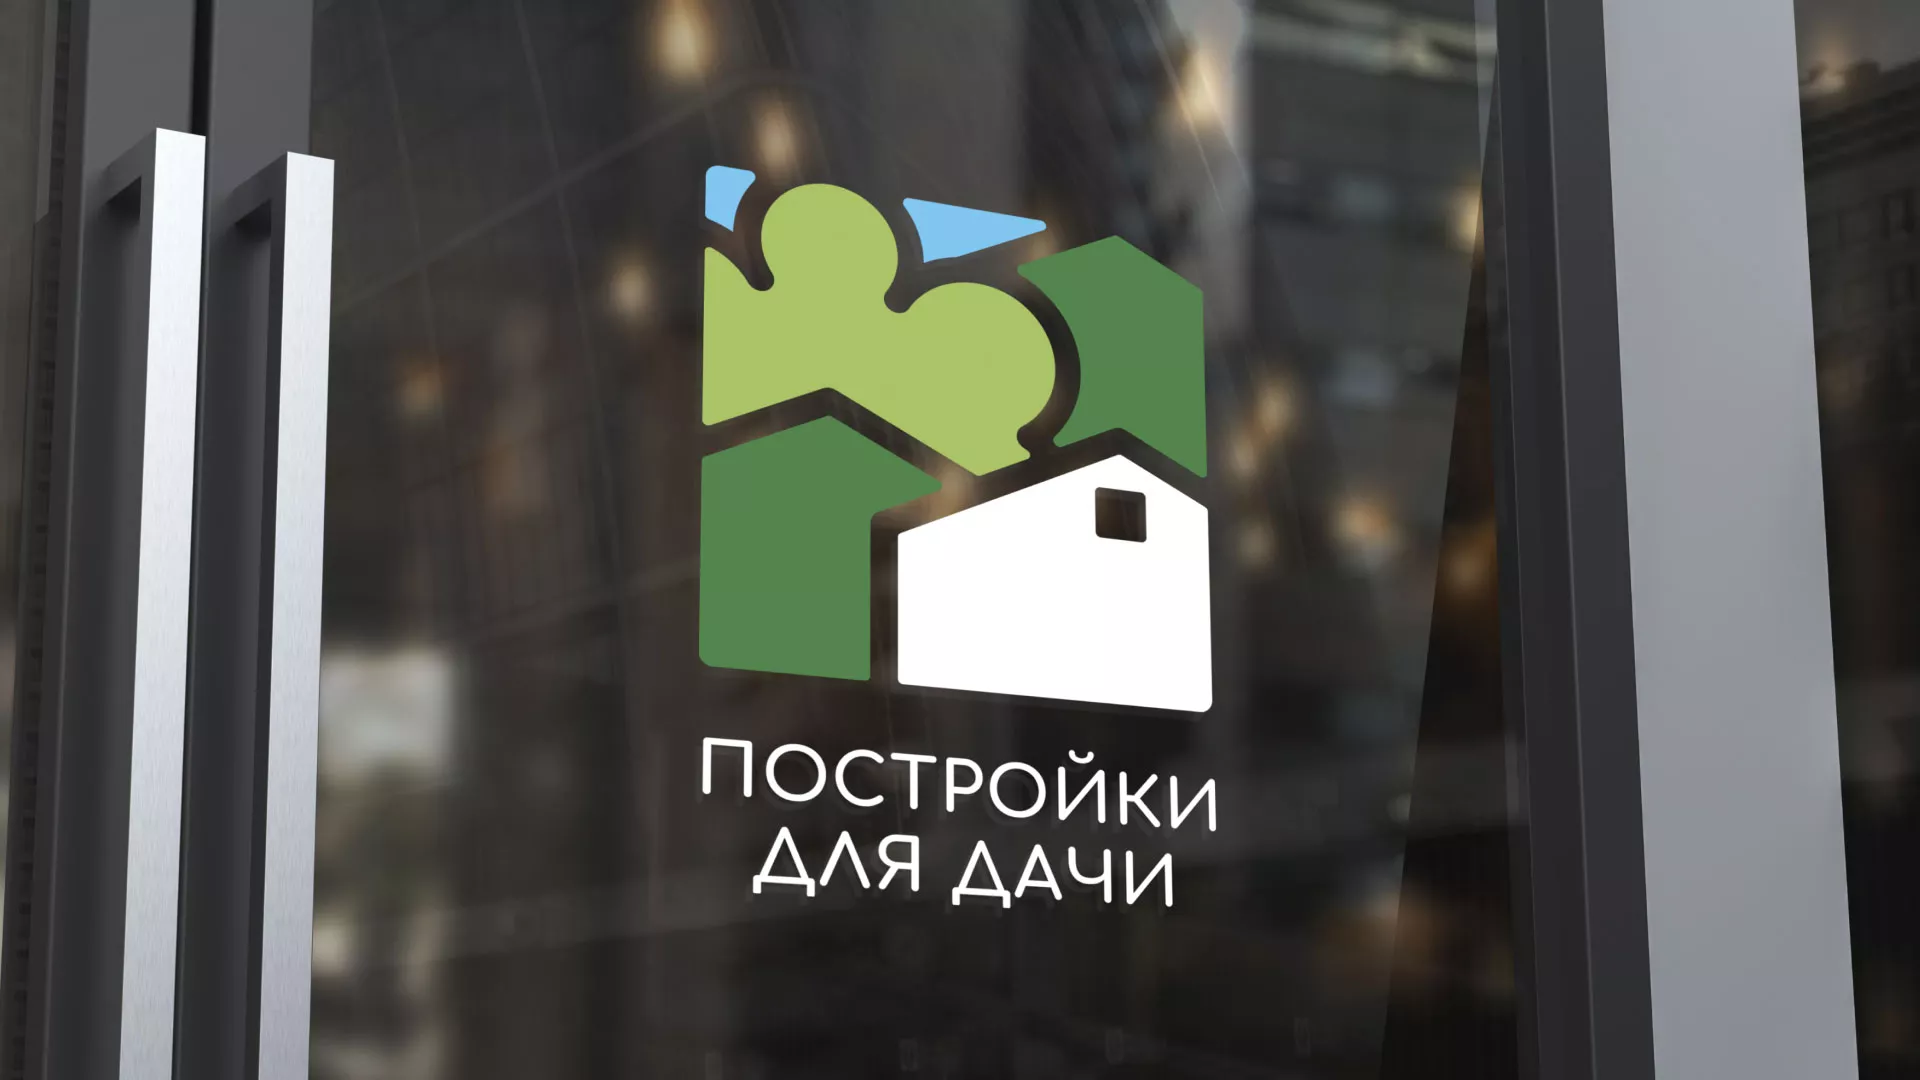 Разработка логотипа в Сердобске для компании «Постройки для дачи»